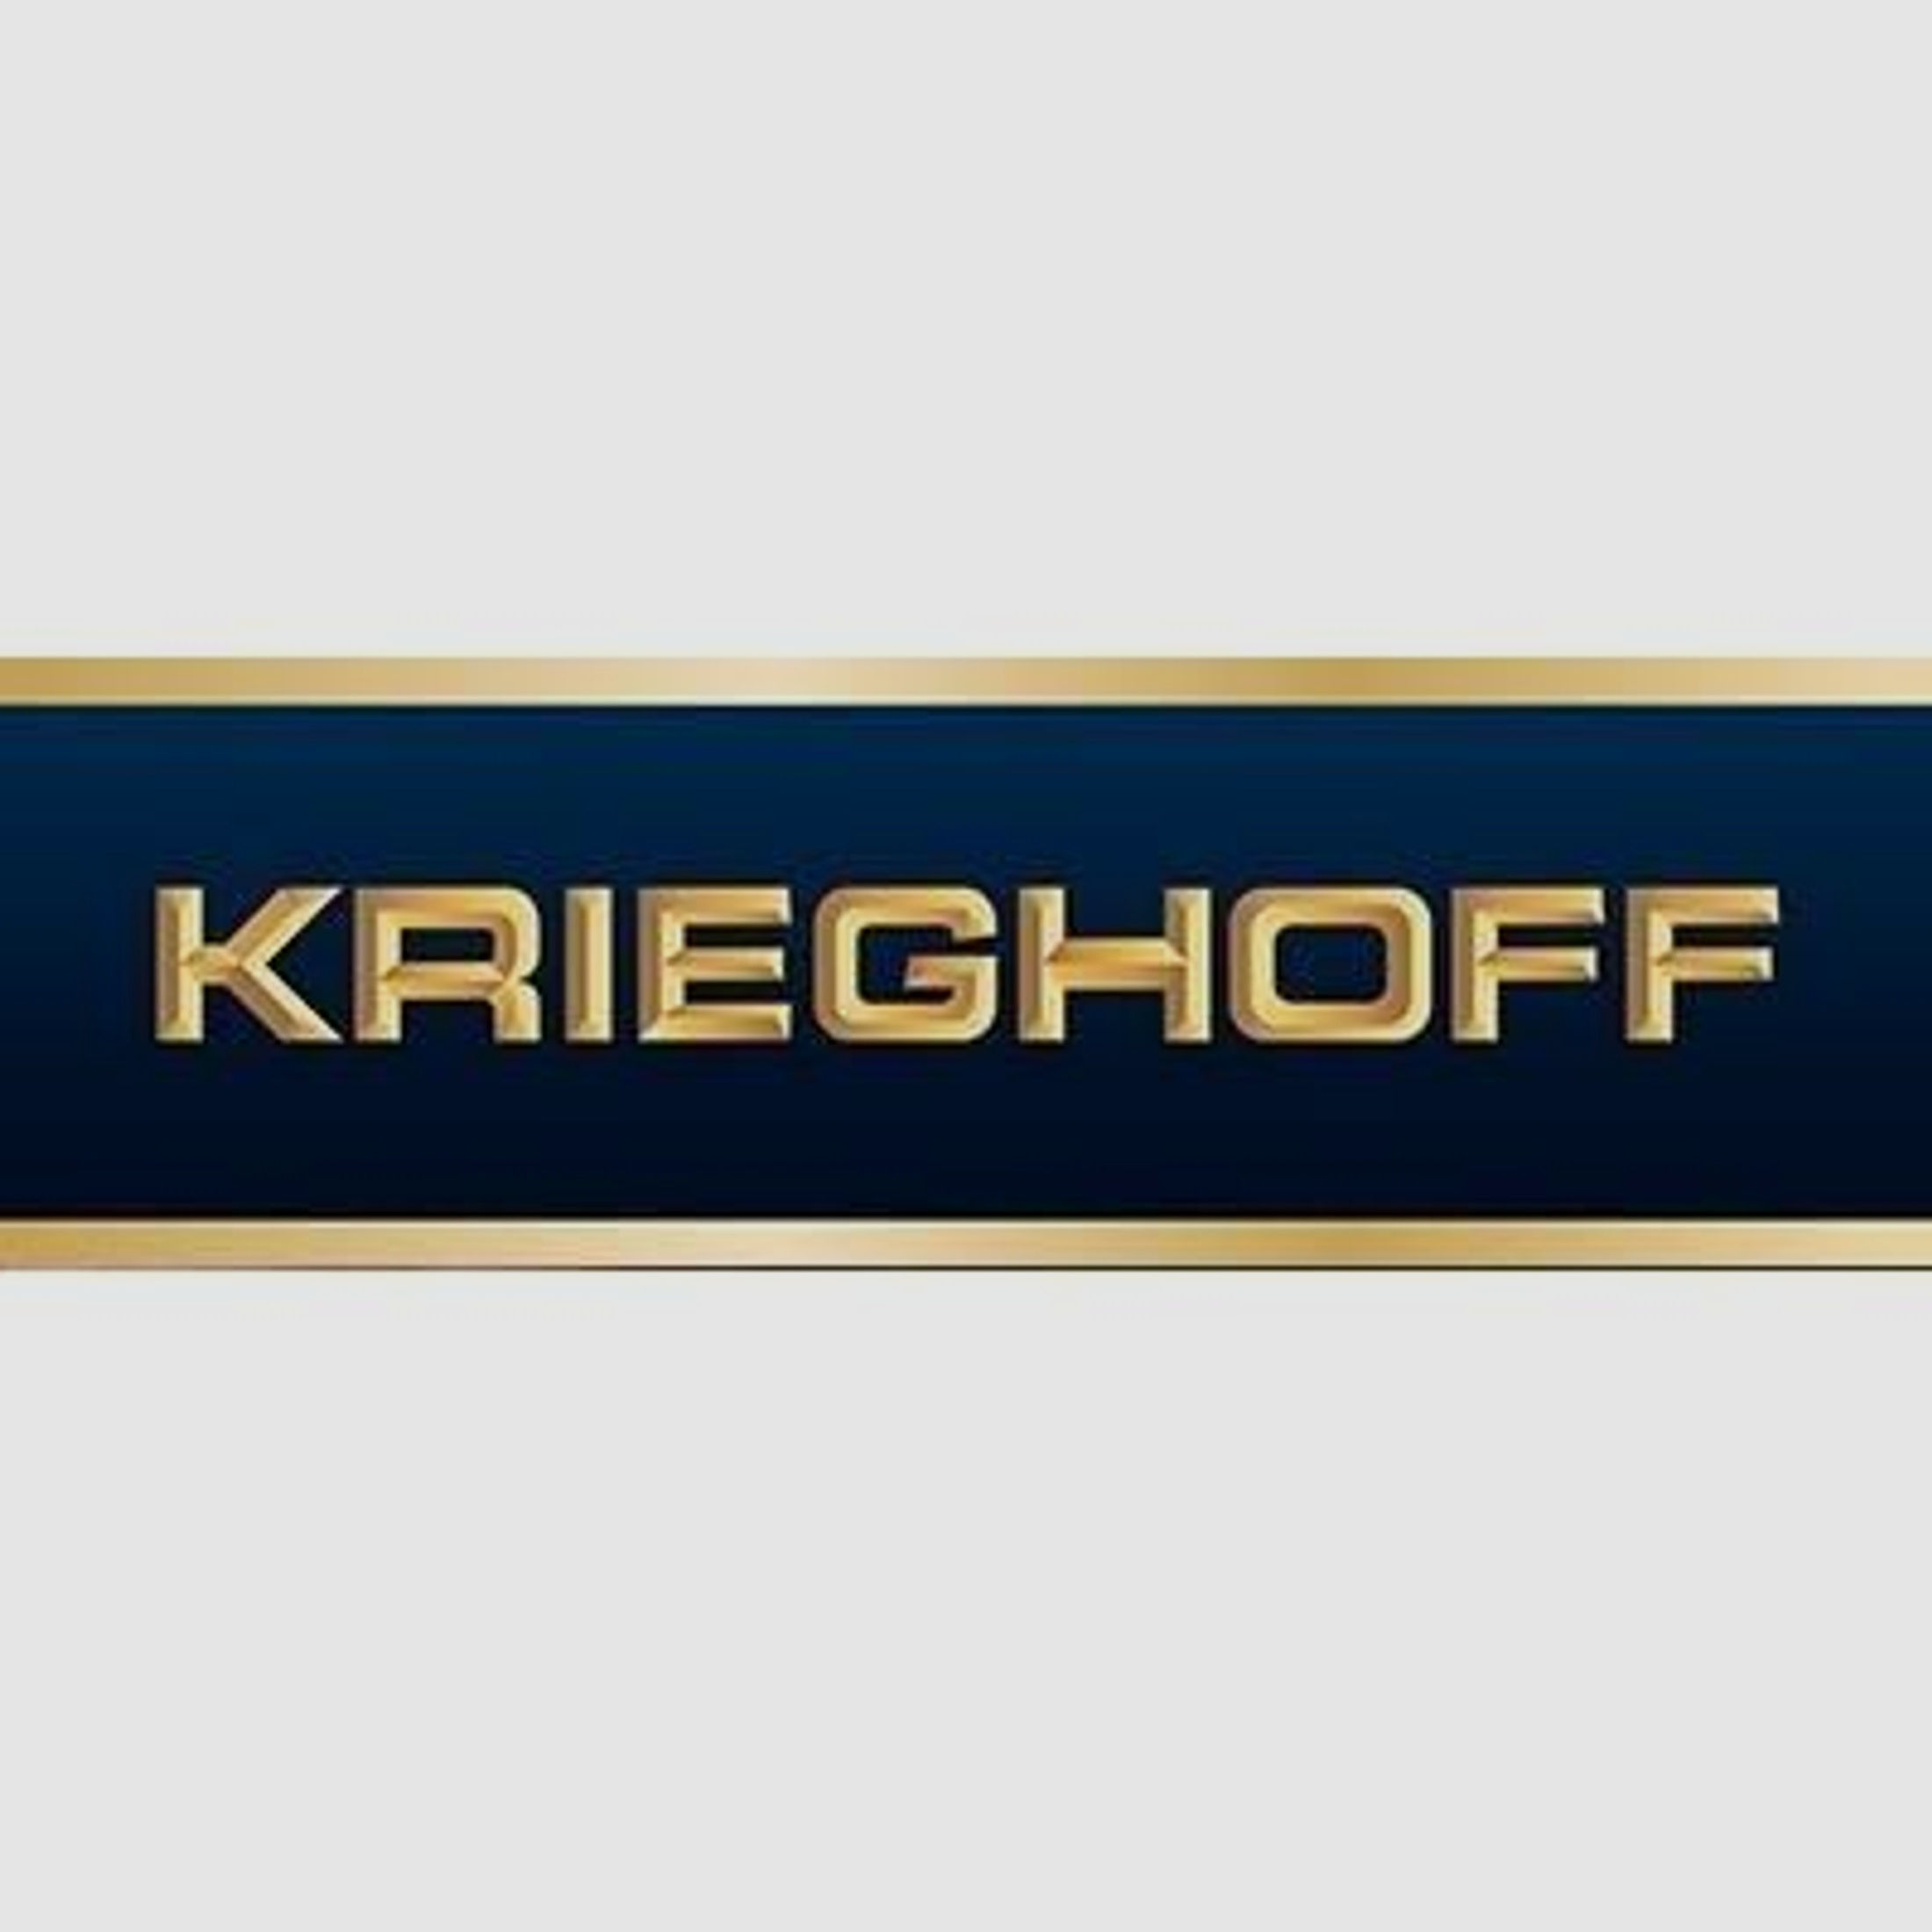 KRIEGHOFF Mehrpreis für Neuwaffe Schaftholz #3 - Mehrpreis Optima-Ultra-Classic-Hubertus